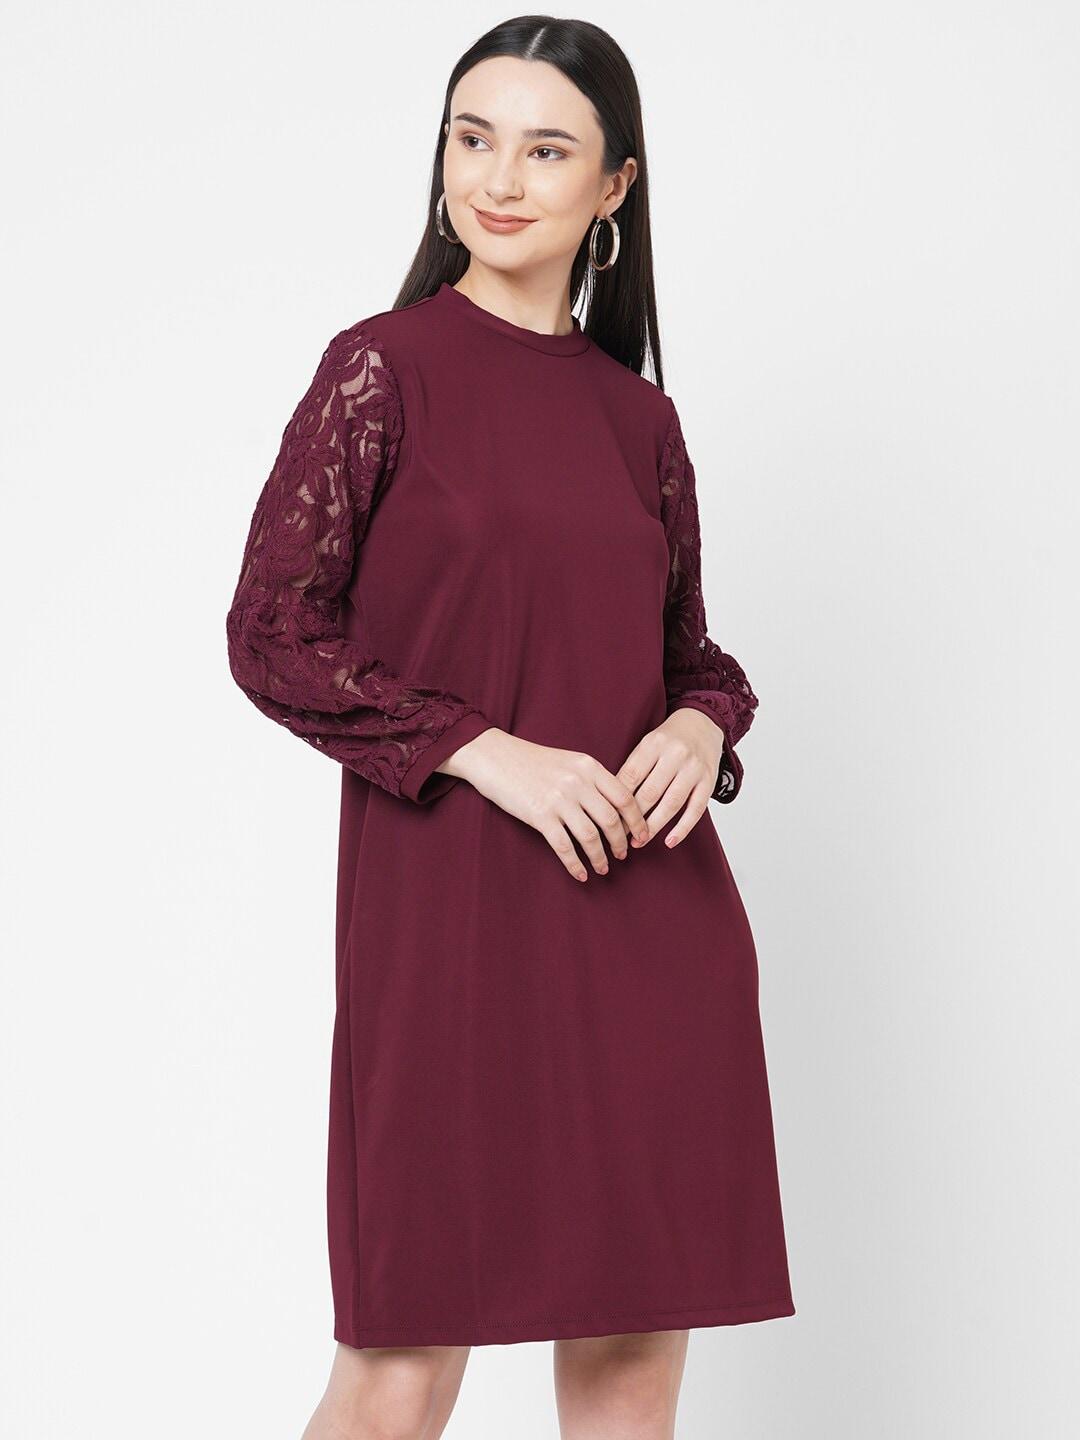 109f maroon sheath dress